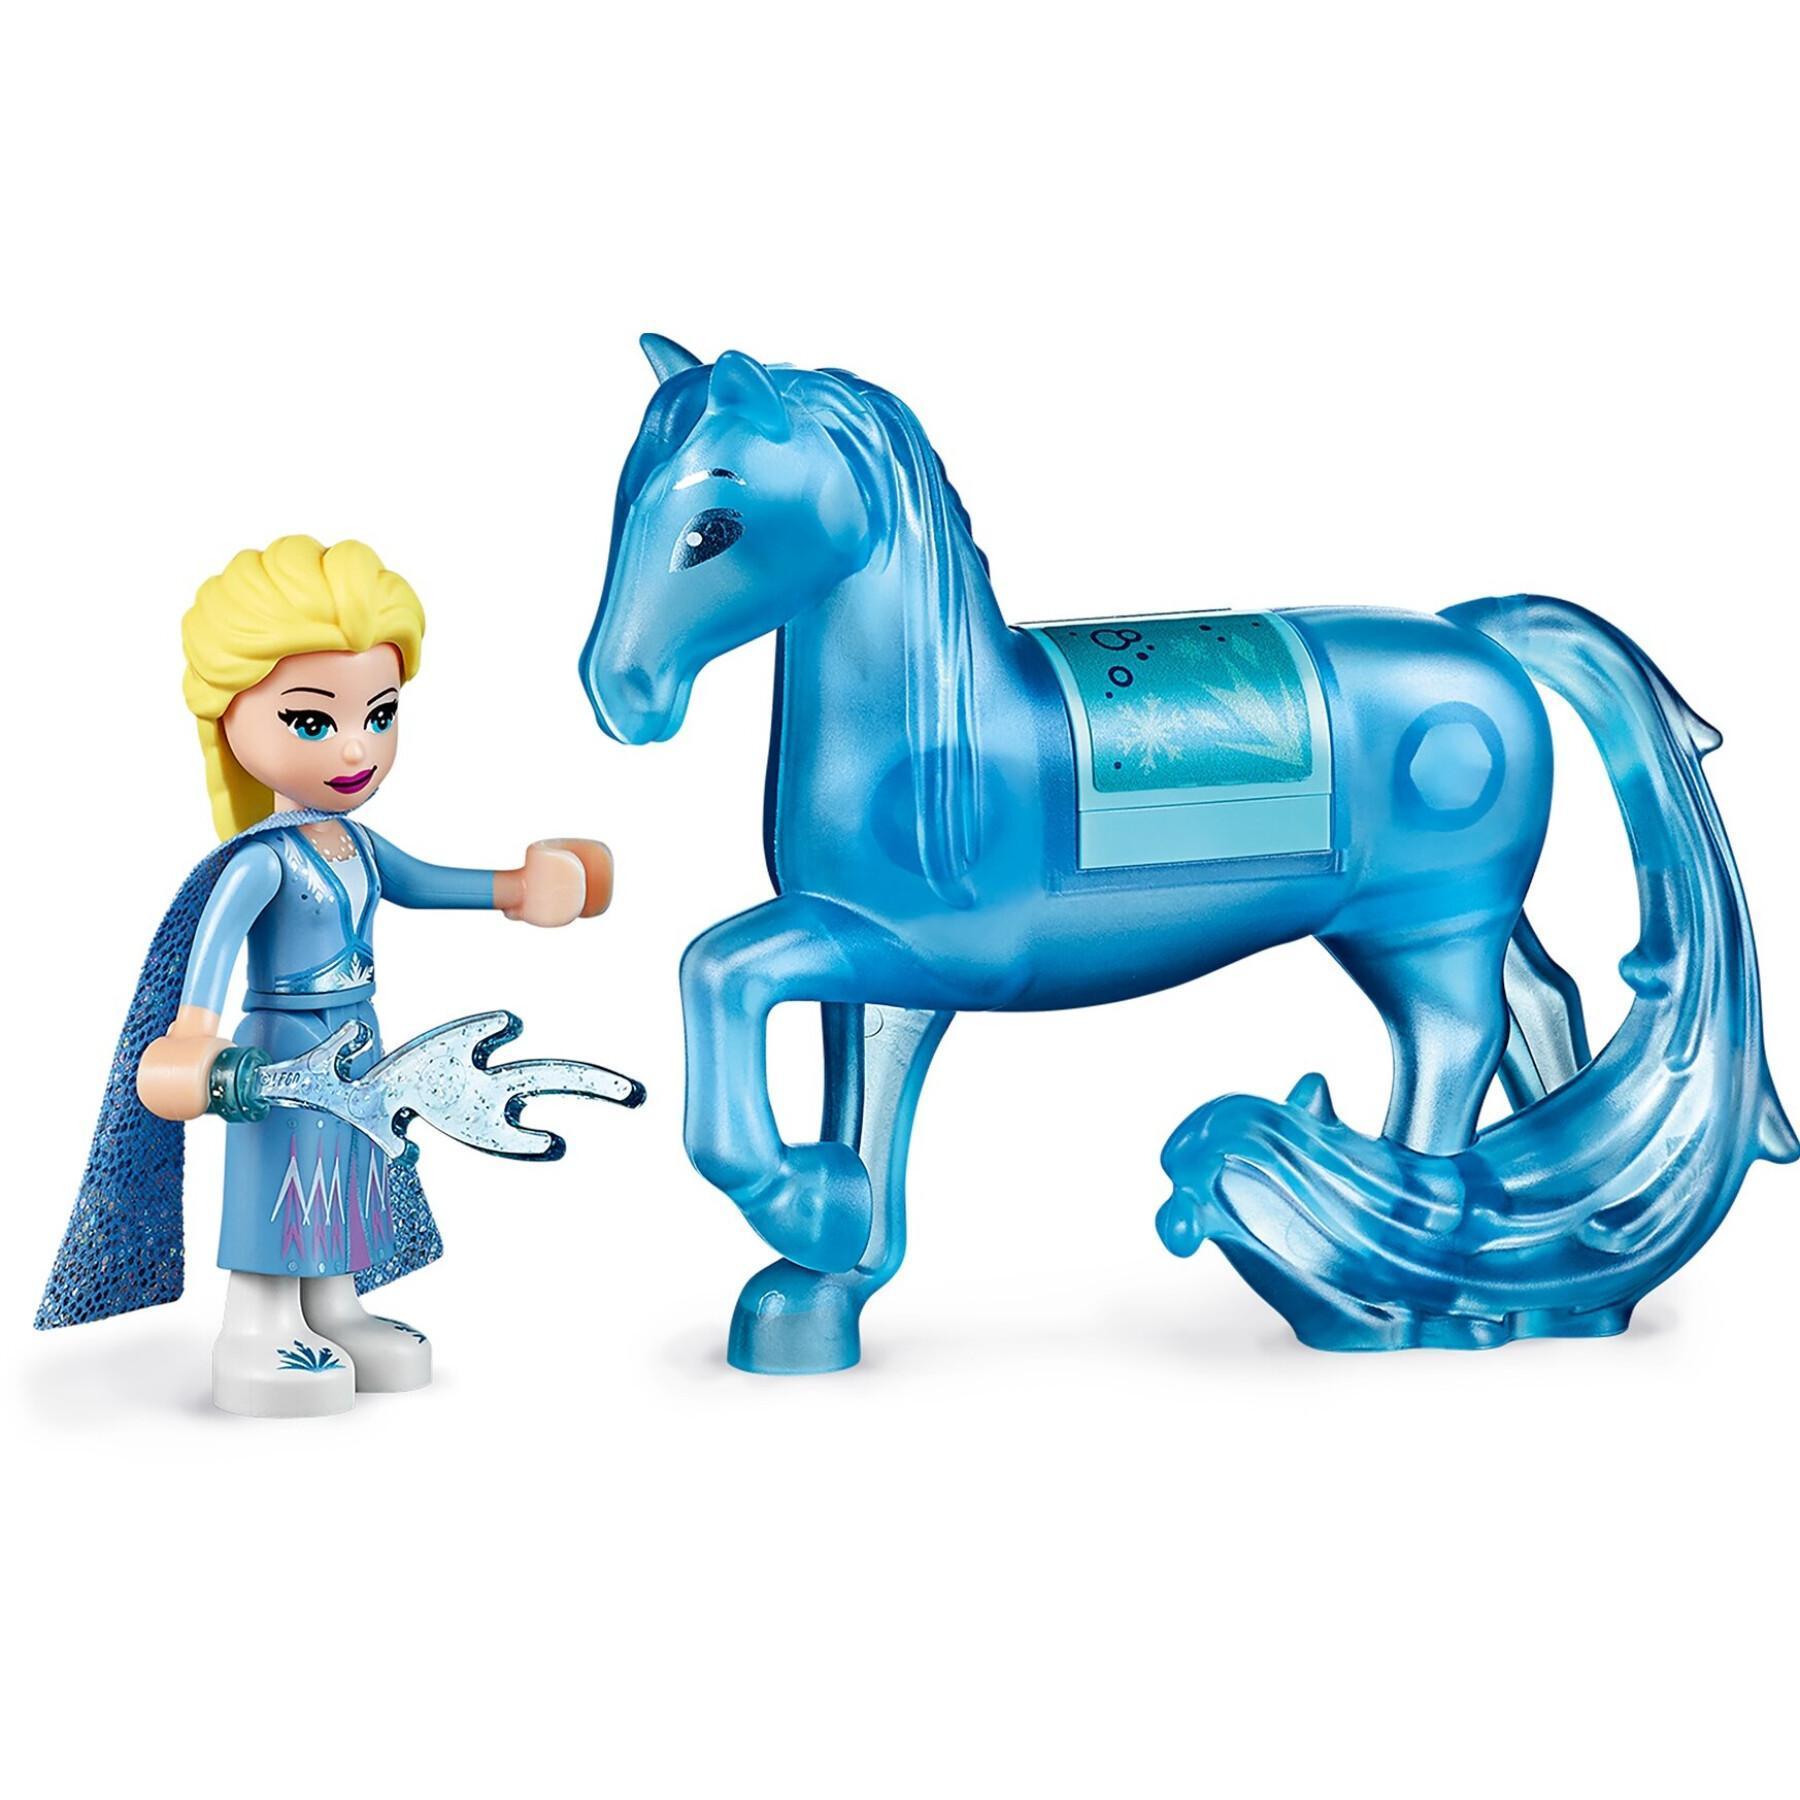 Joyero Lego Elsa Frozen 2